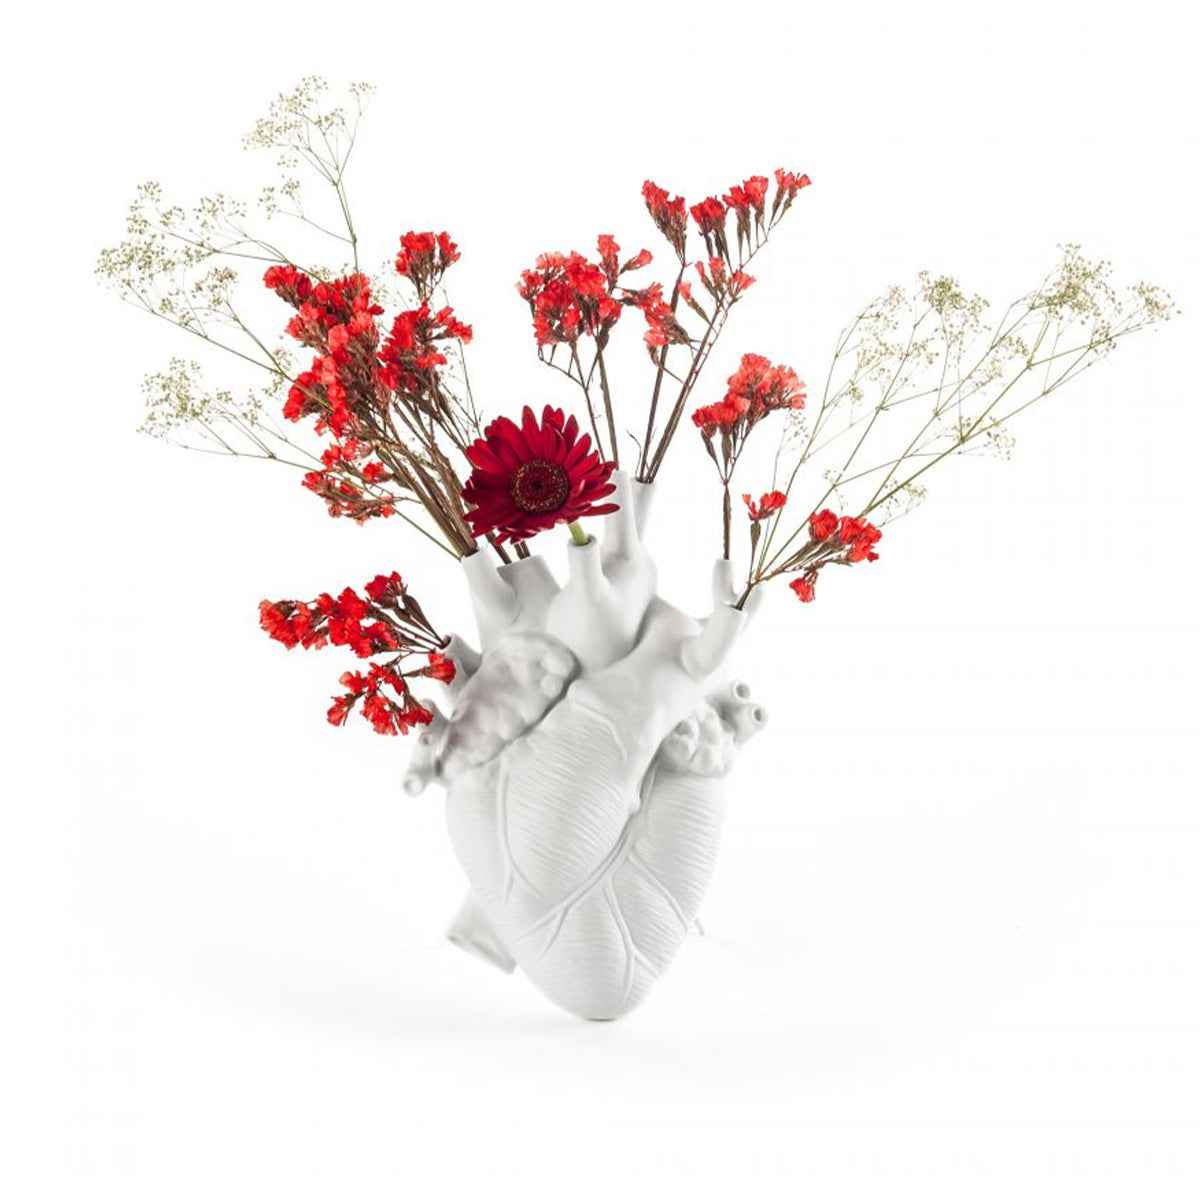 Love in Bloom - Heart Vase